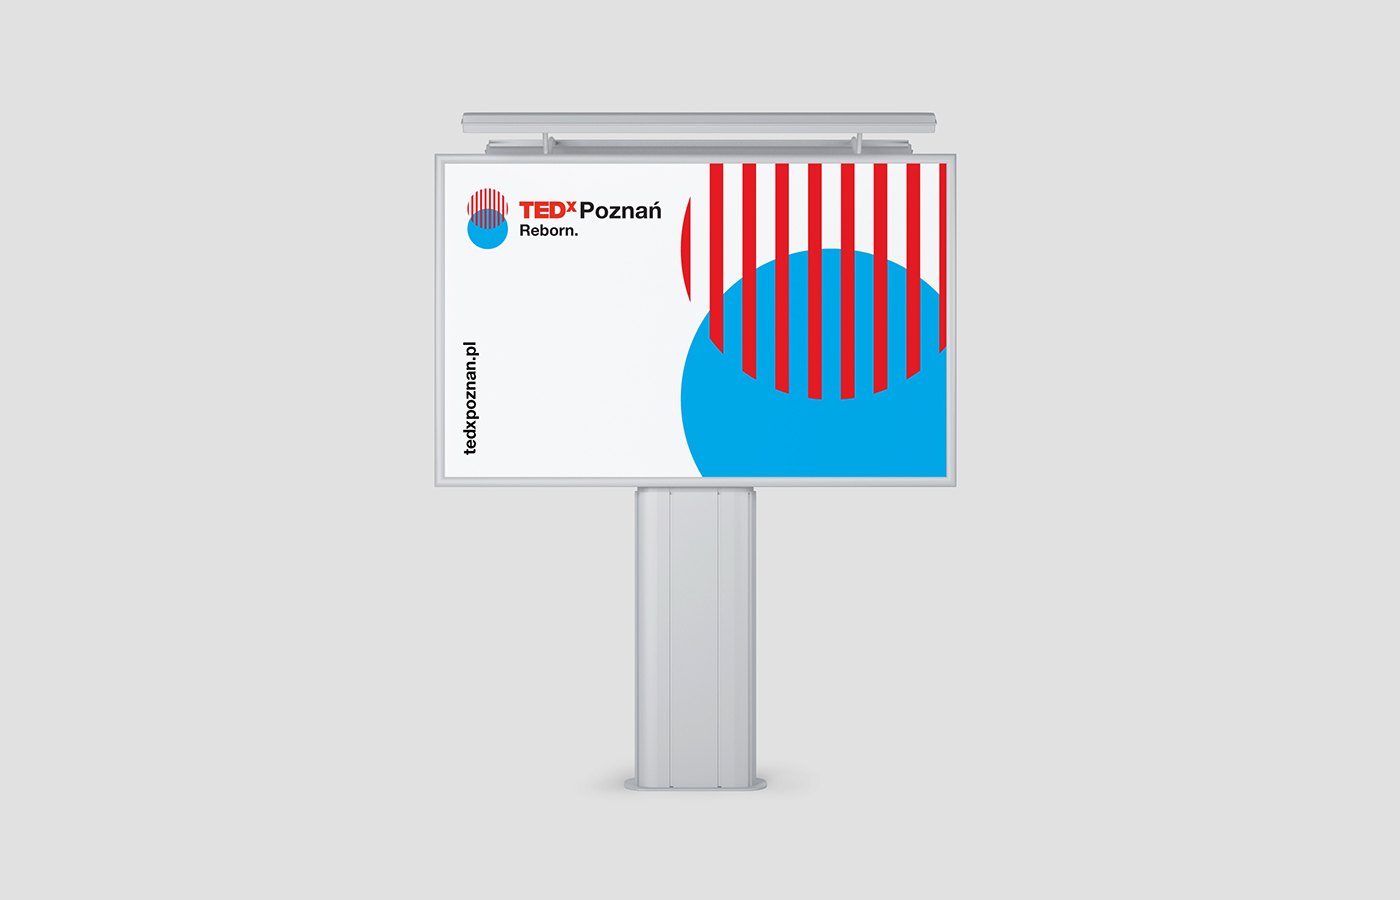 Adobe Portfolio TEDx tedx poznan reborn tedx branding natalia zerko visual identity TEDx Event